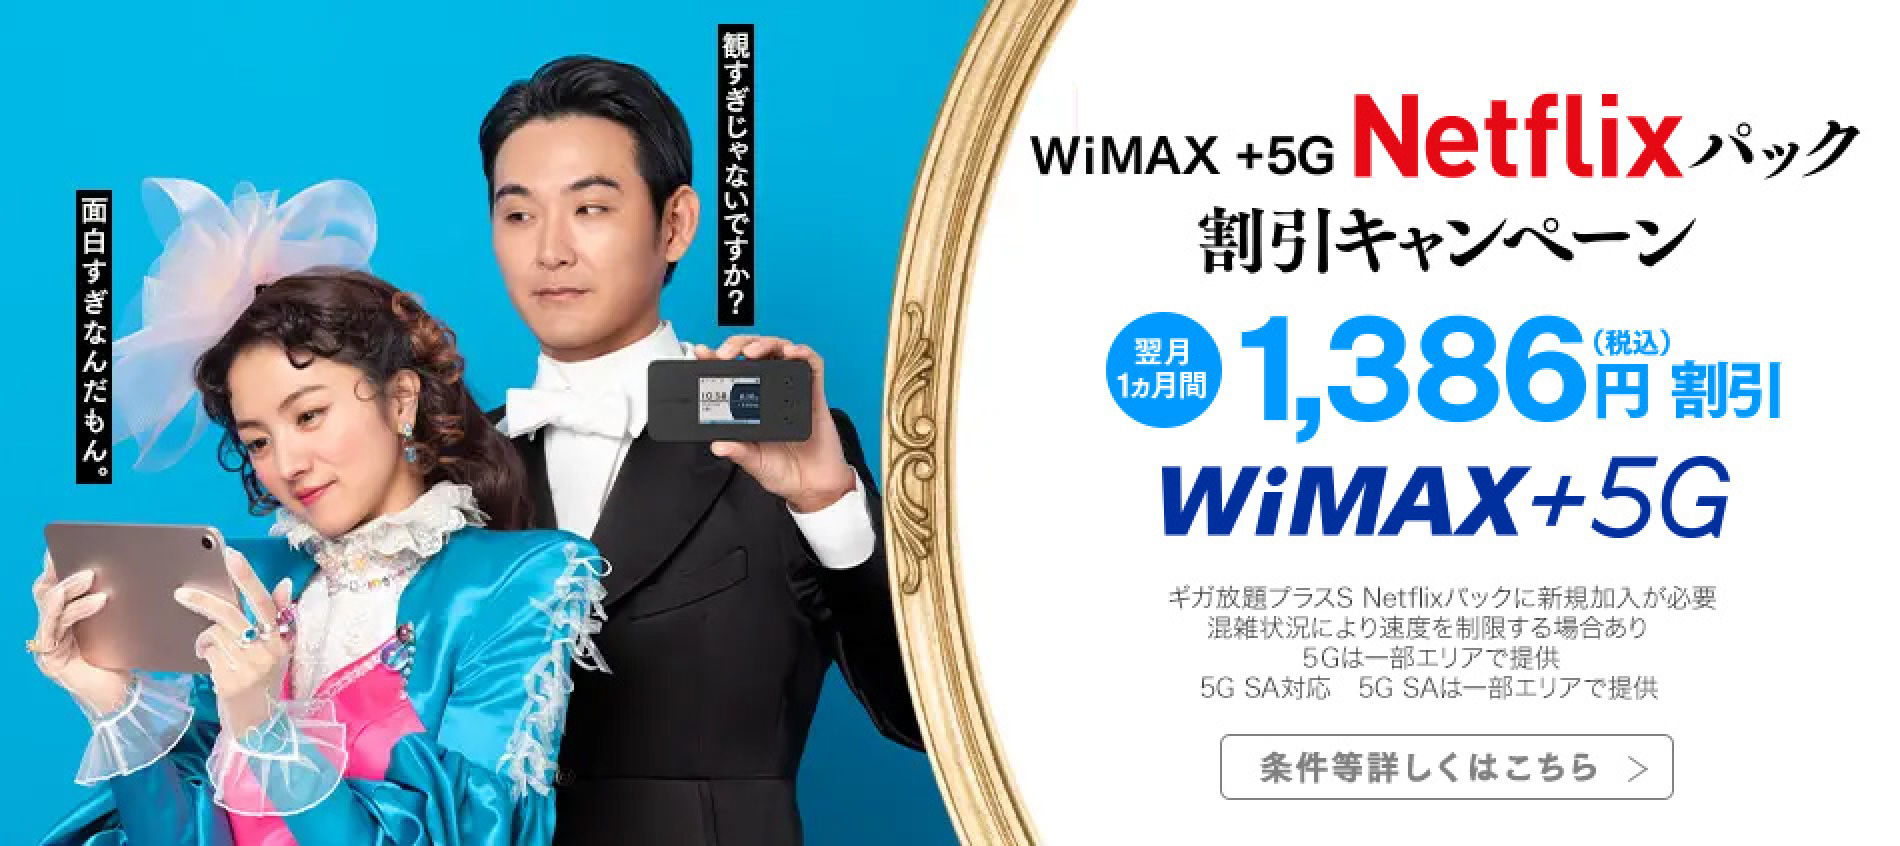 WiMAX +5G Netflixパック割引キャンペーン　翌月1ヵ月間1,386円（税込）円割引　WiMAX +5G　※ギガ放題プラスS Netflixパックに新規加入が必要　※混雑状況により速度を制限する場合あり　※5Gは一部エリアで提供　※5G SA対応　※5G SAは一部エリアで提供　条件等詳しくはこちら